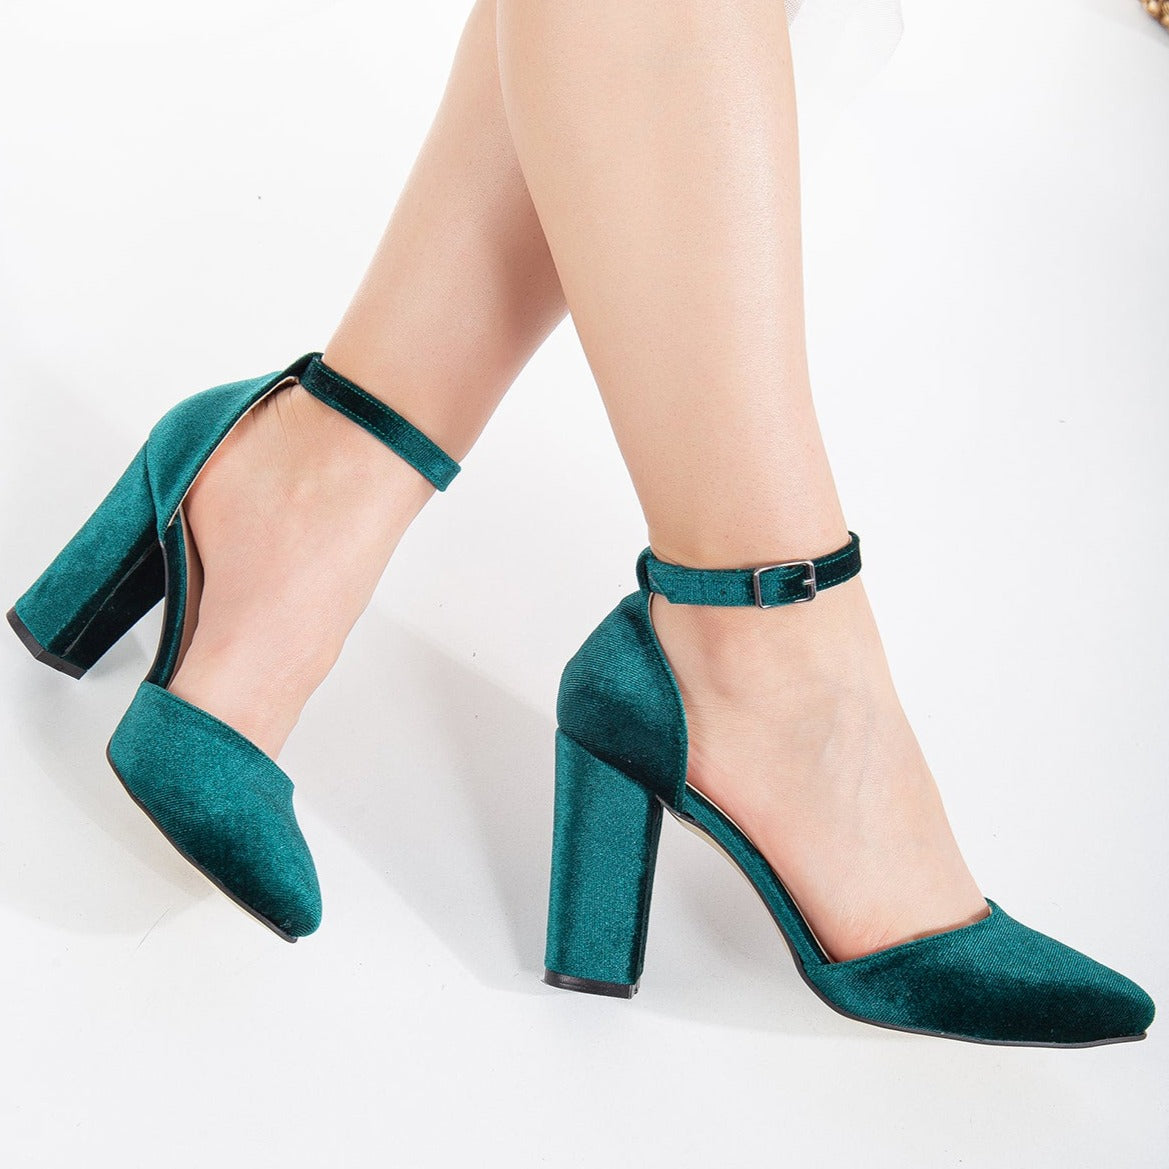 Gisele - Emerald Green Wedding High Heels